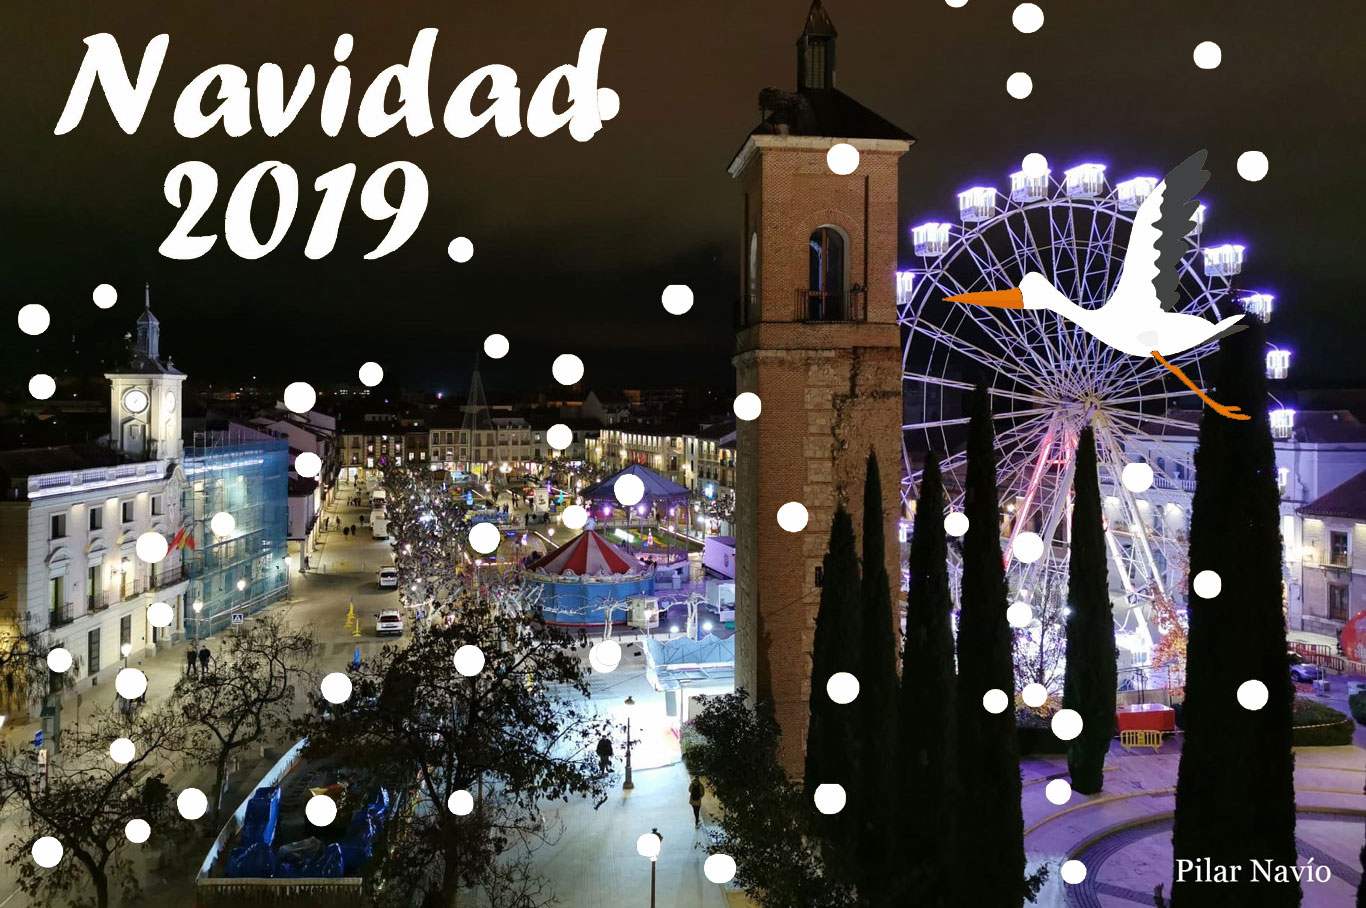 de la Navidad 2019 de Alcalá de Henares Dream Alcalá